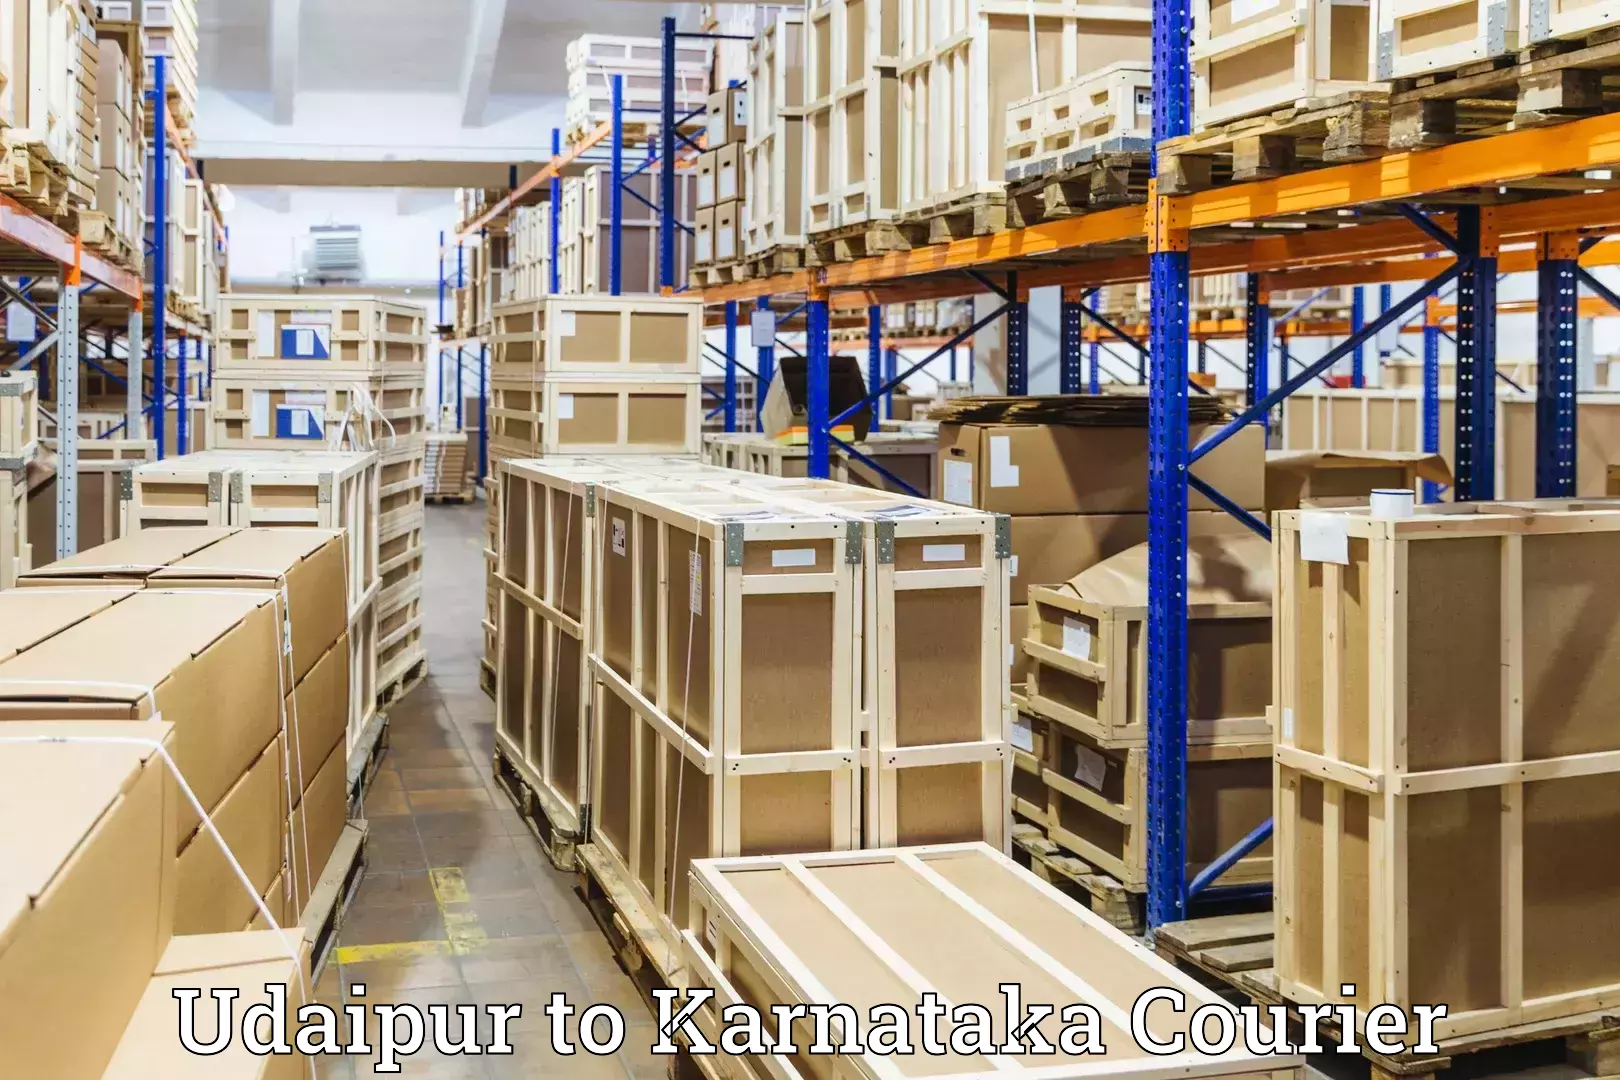 Luggage shipping service Udaipur to Harohalli